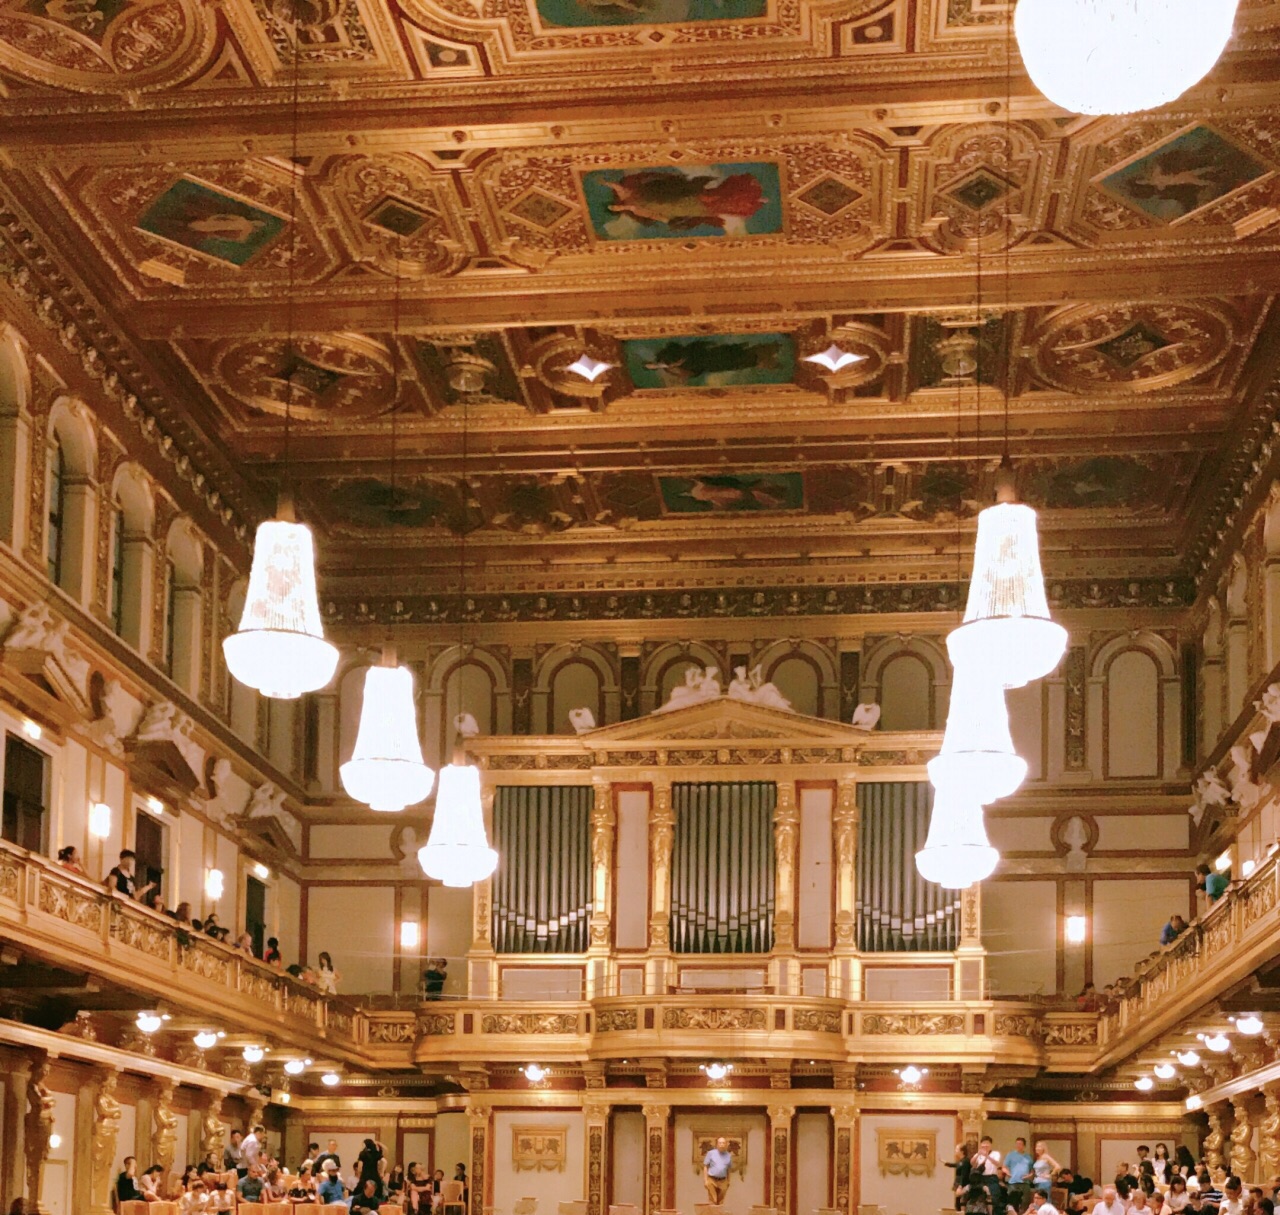 Orquesta Mozart de Viena